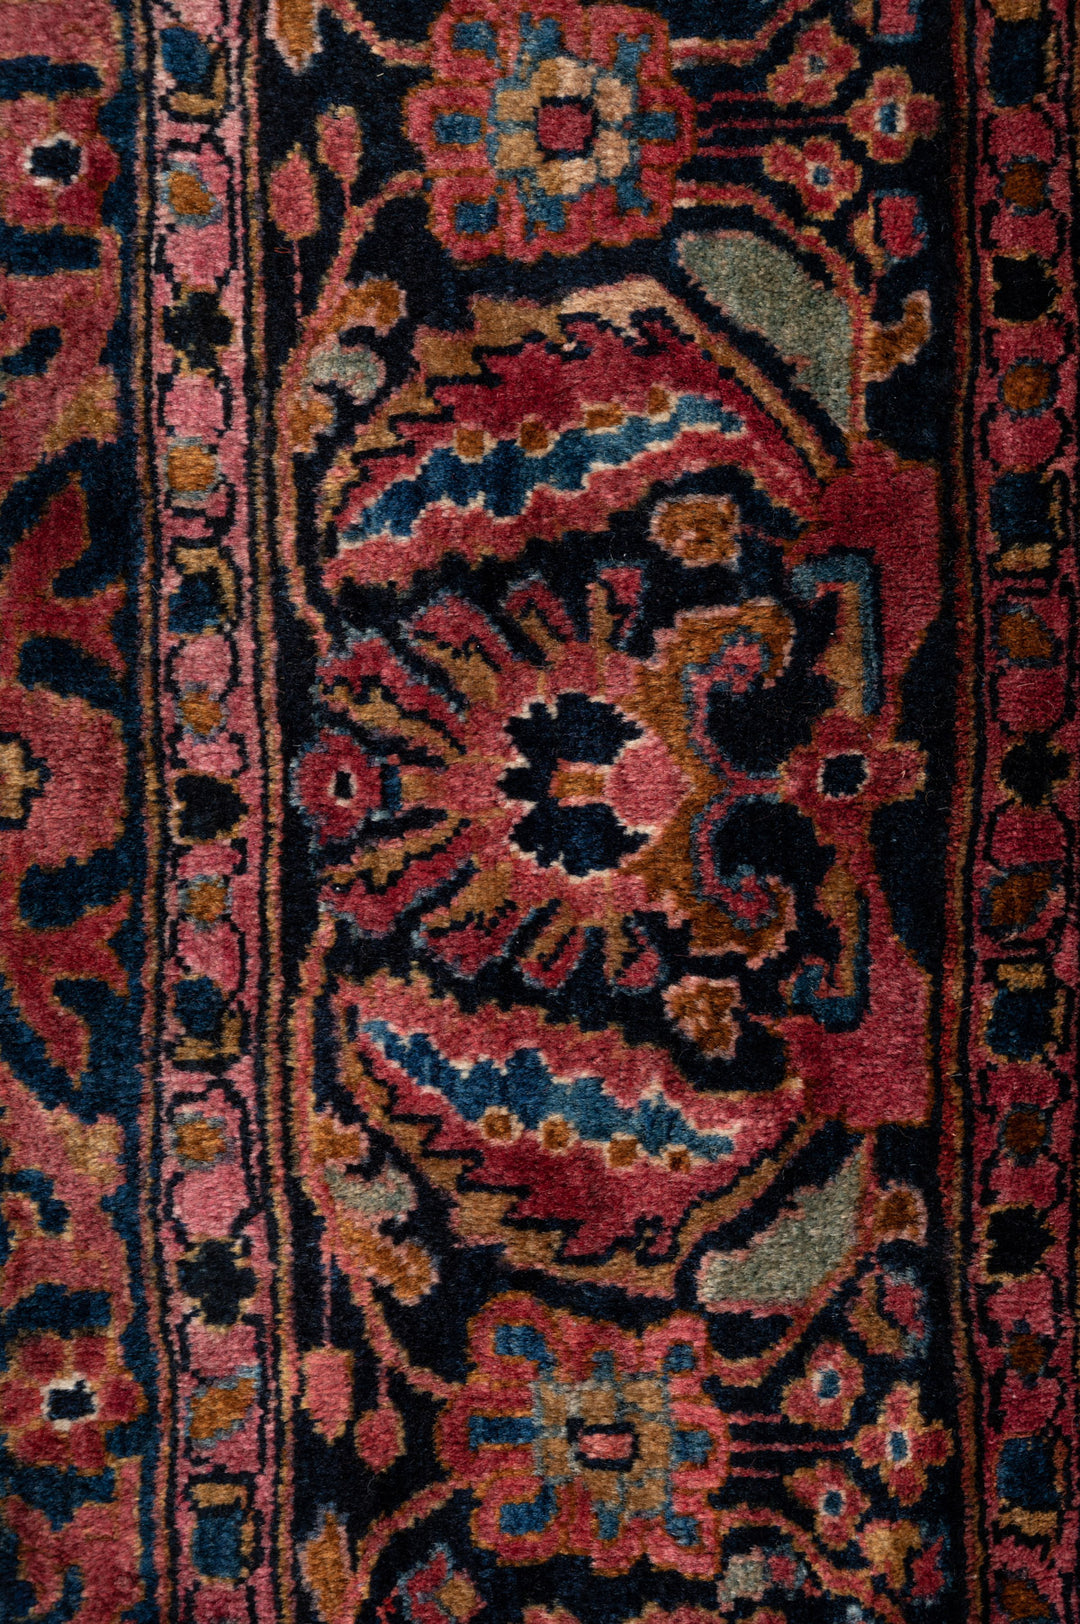 ERLINA Antique Persian Sarouk 348x246cm